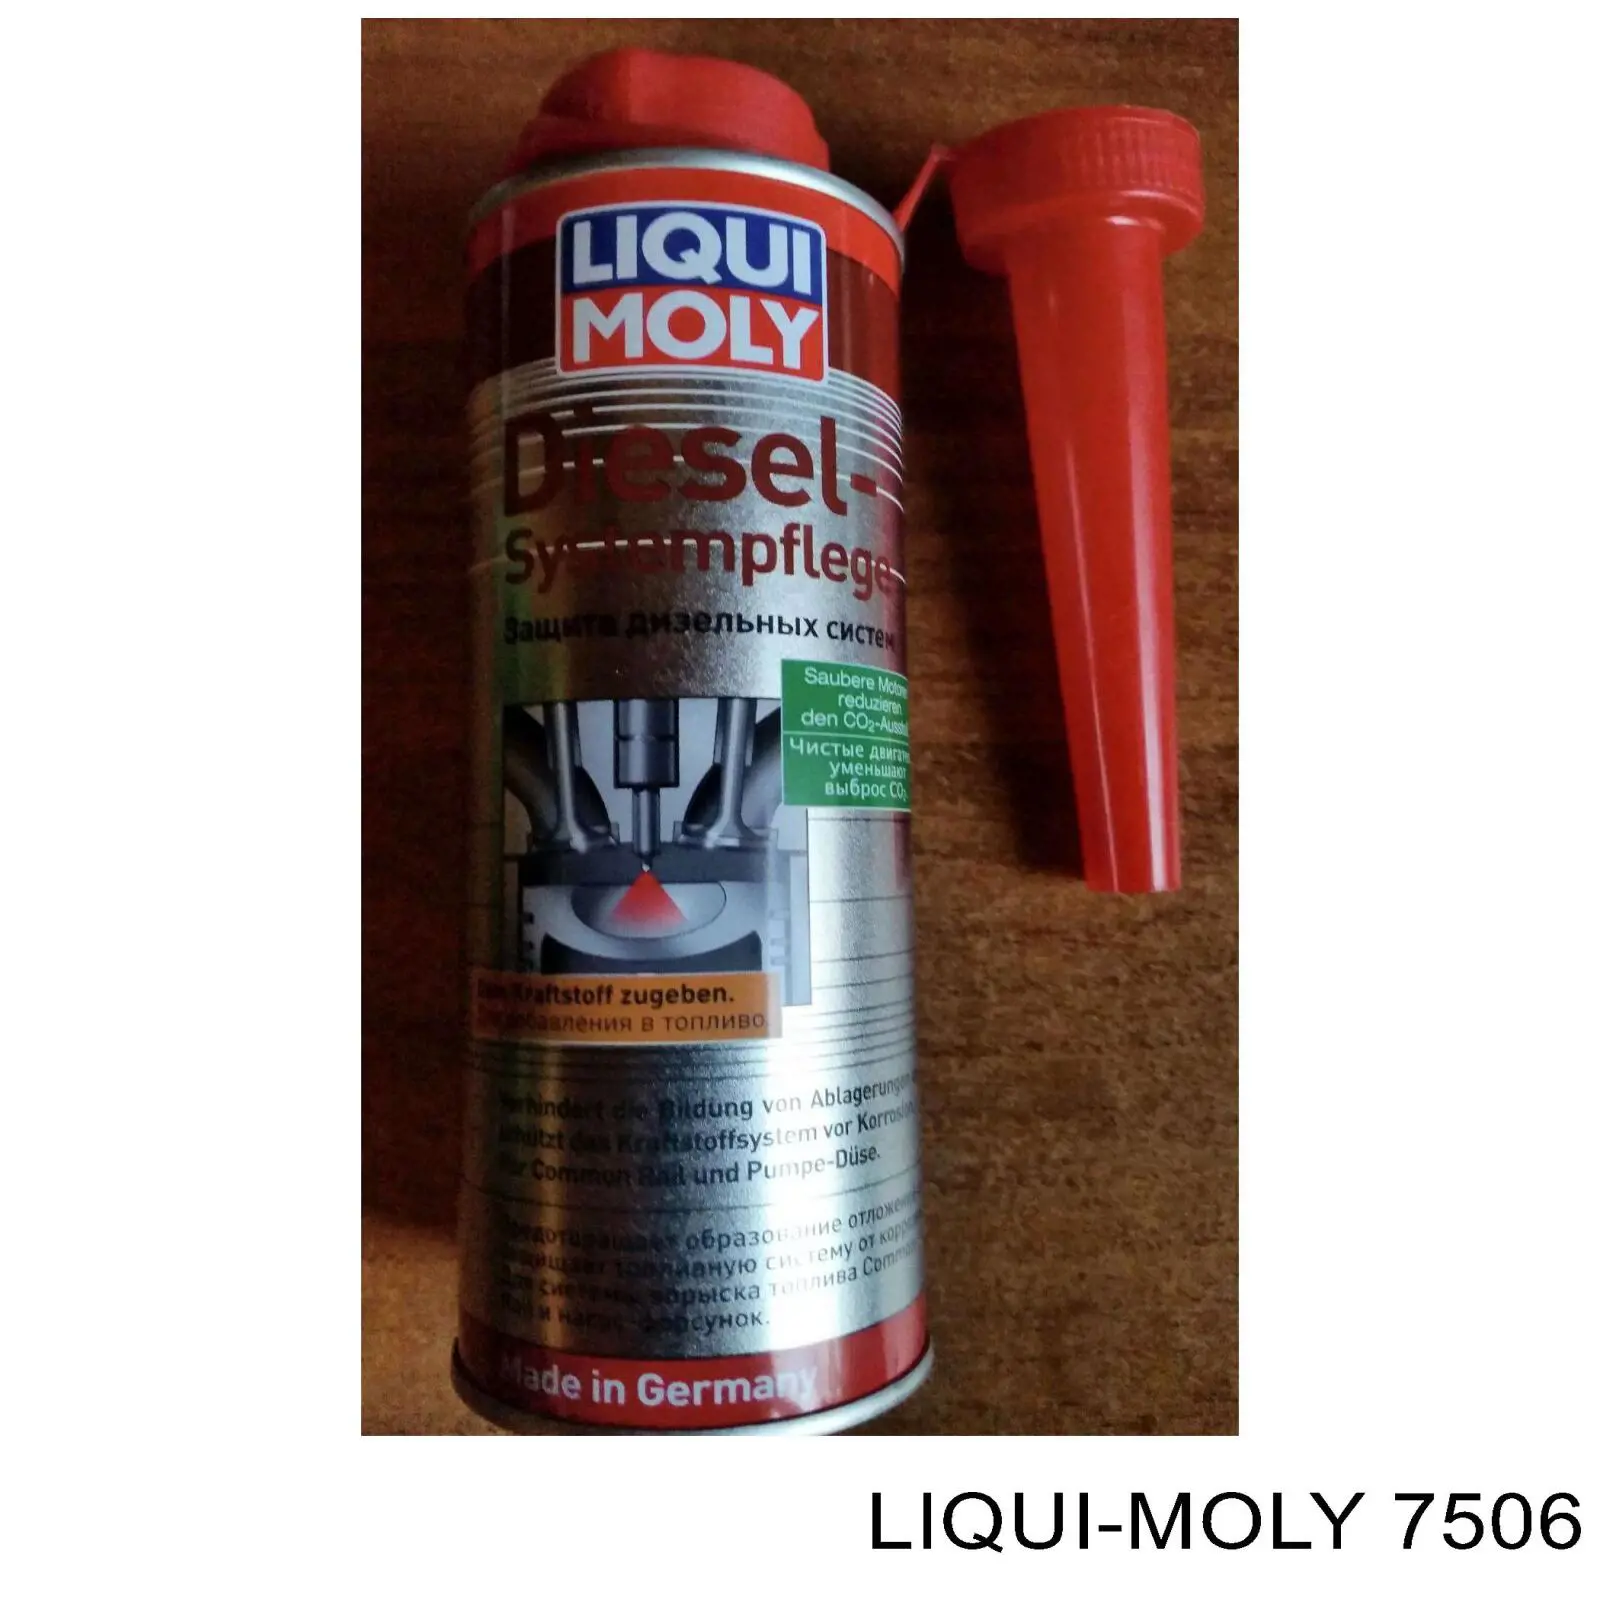 7506 Liqui Moly aditivos sistema de combustible motor diesel